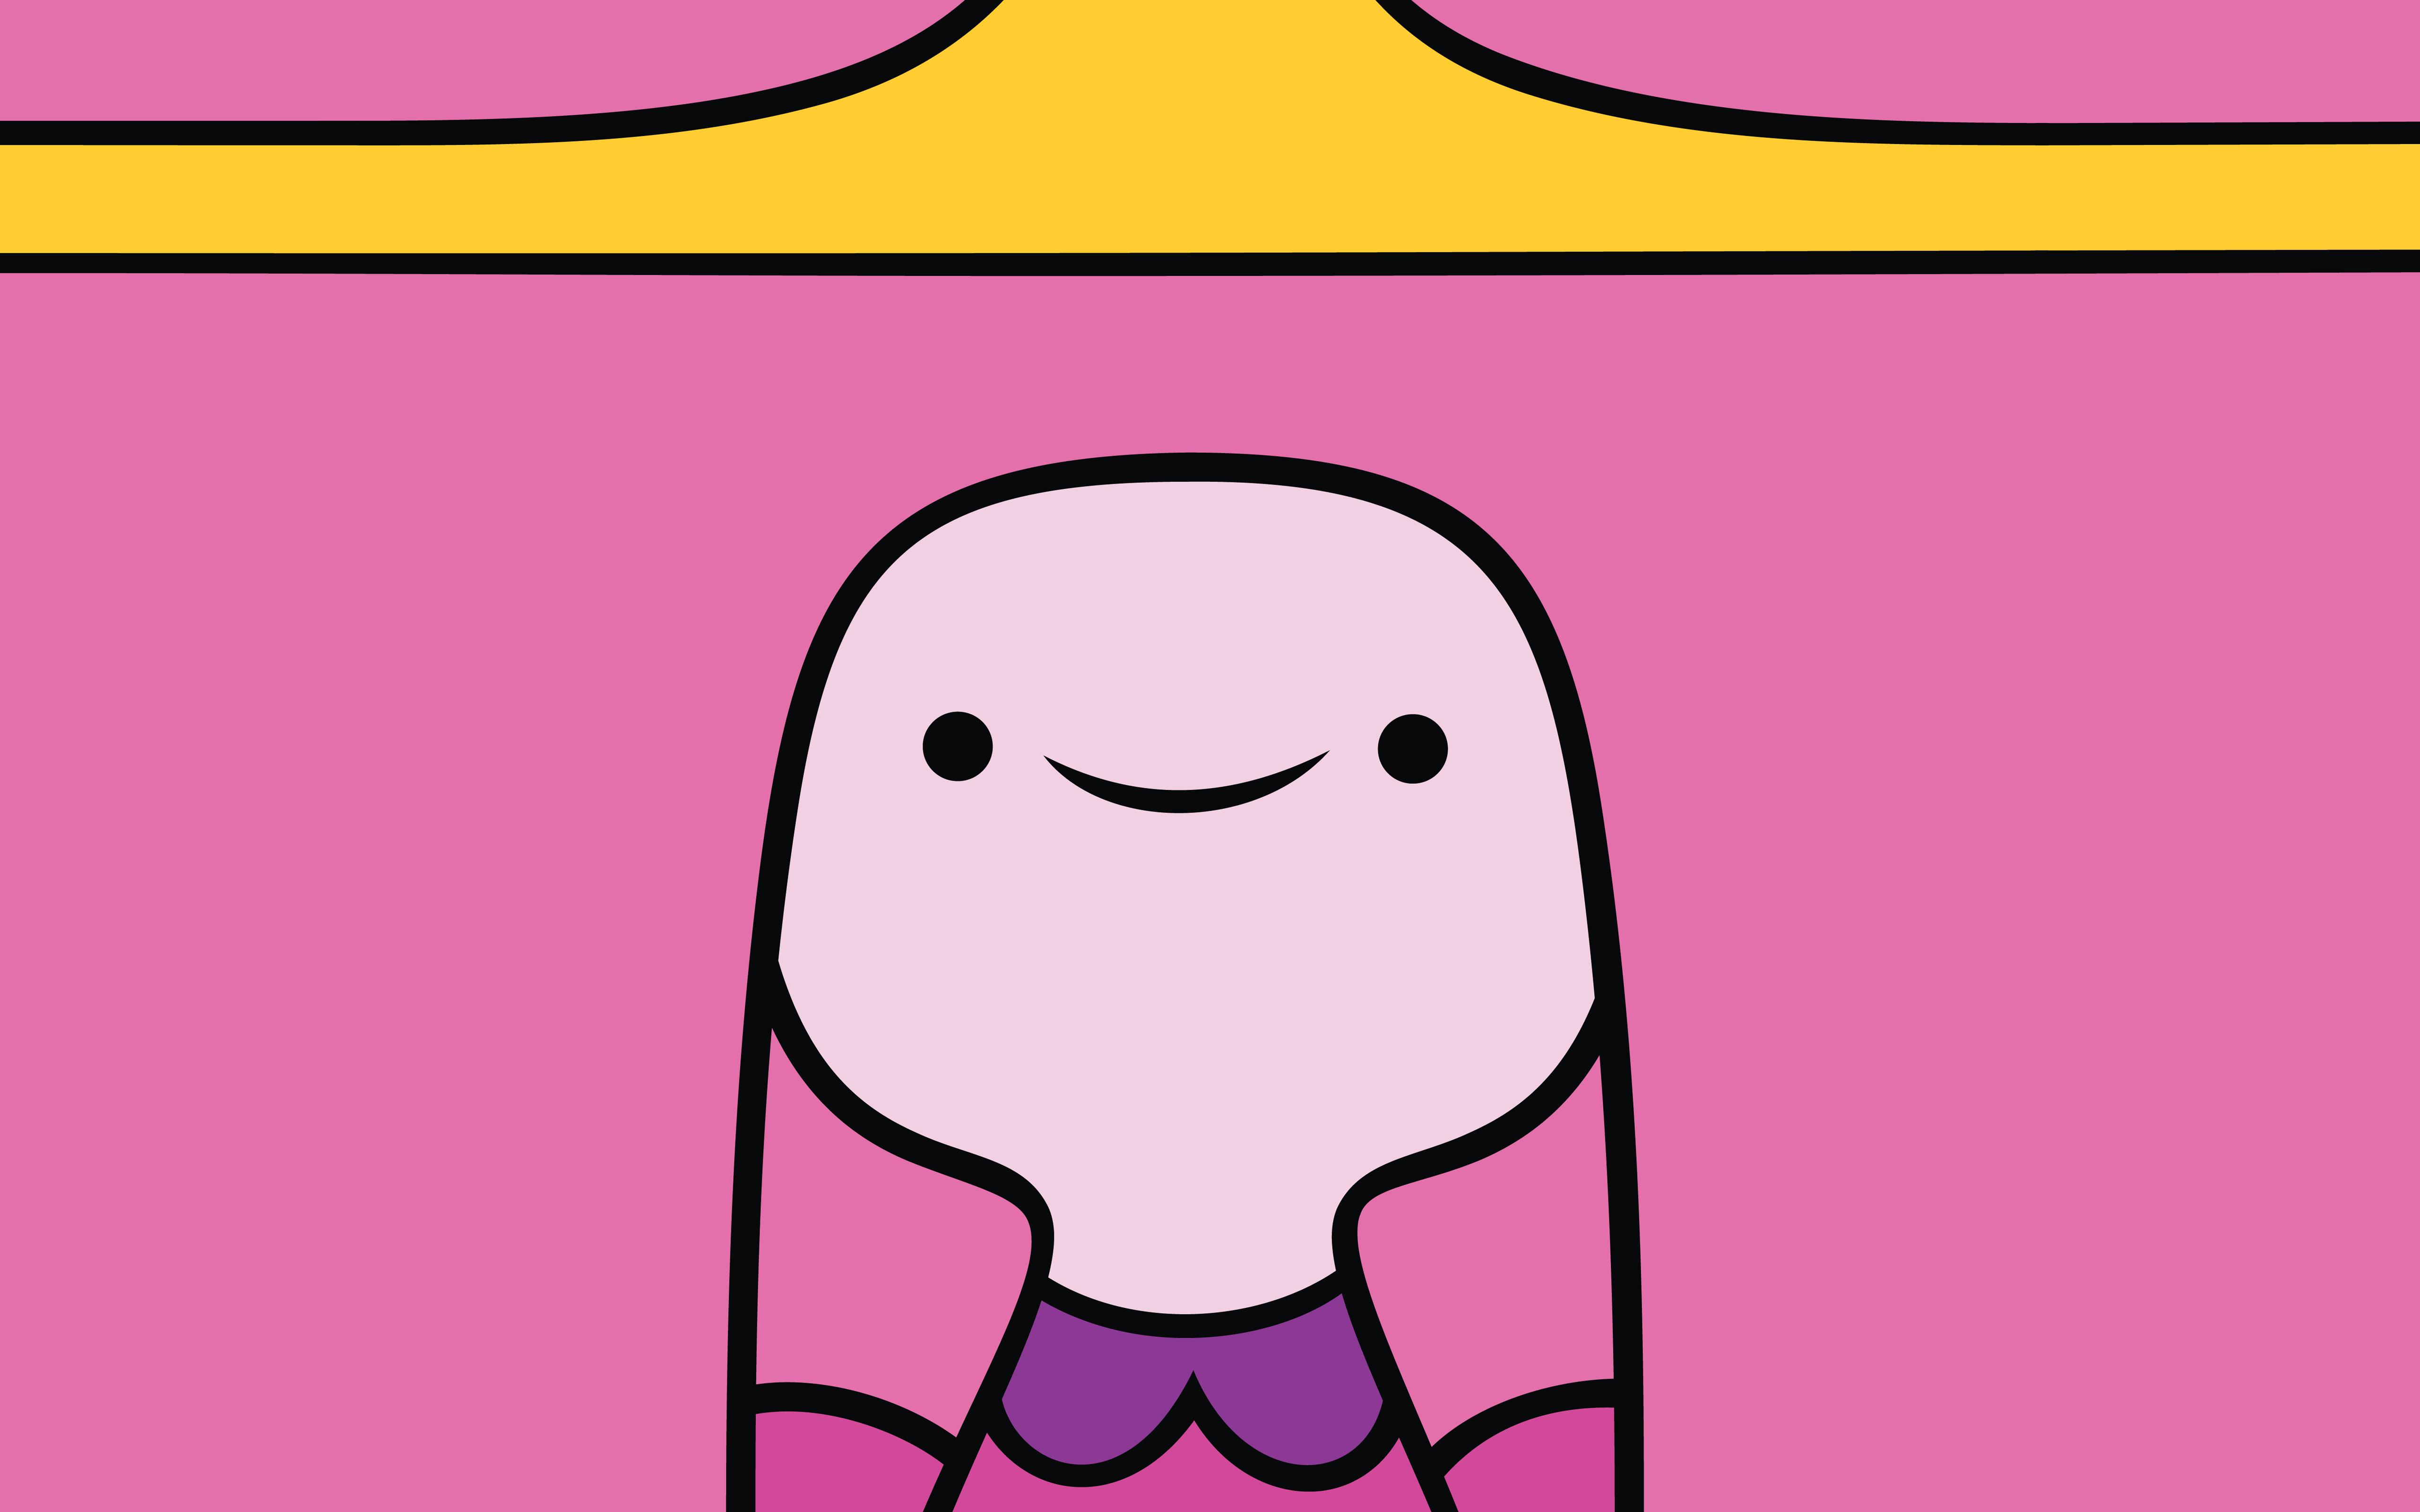 More Princess Bubblegum de Adventure Time wallpapers